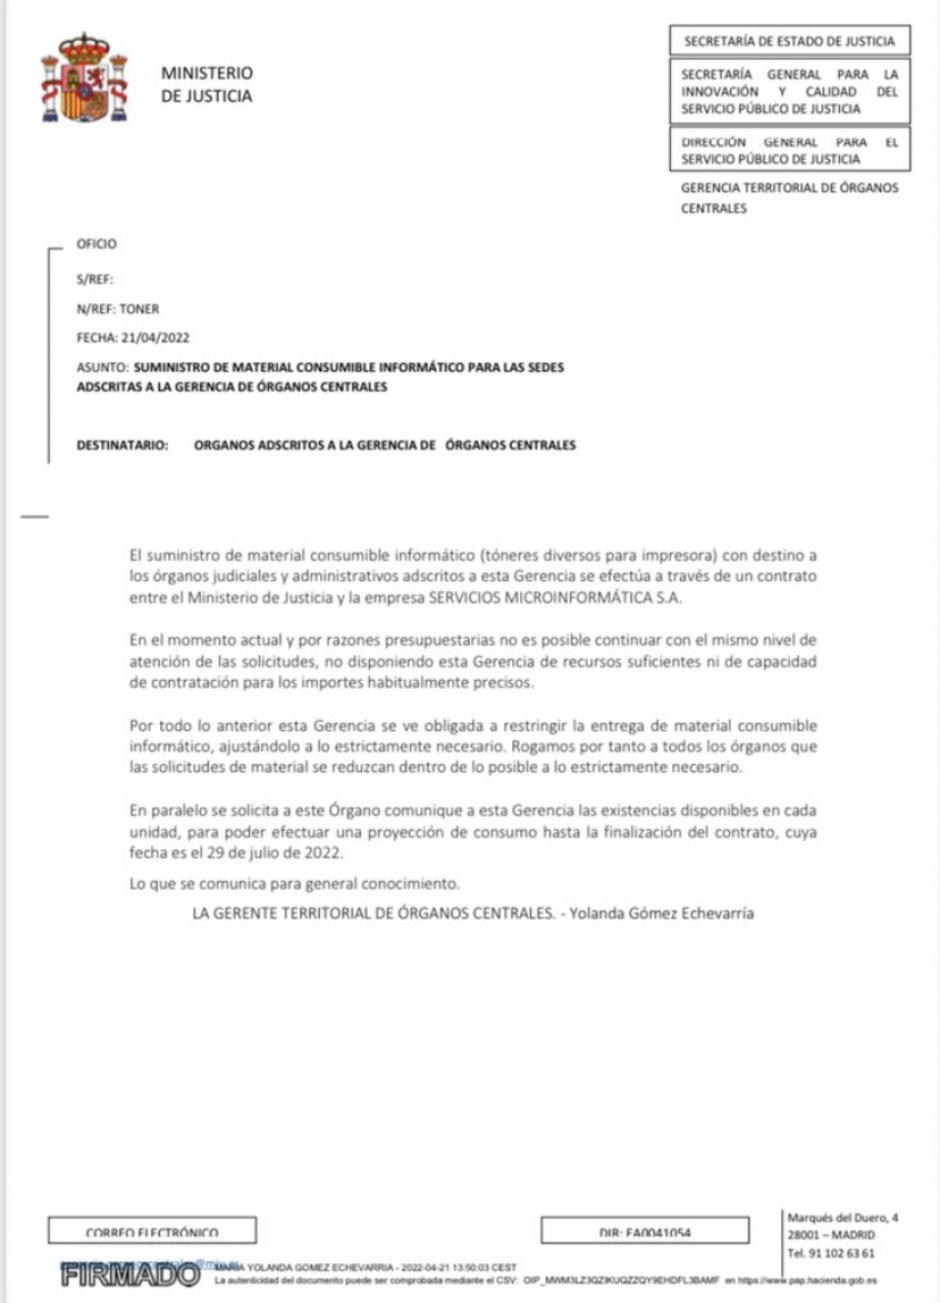 Nota de restricción de material informático remitida por la Gerencia Territorial de Órganos Centrales del Ministerio de Justicia